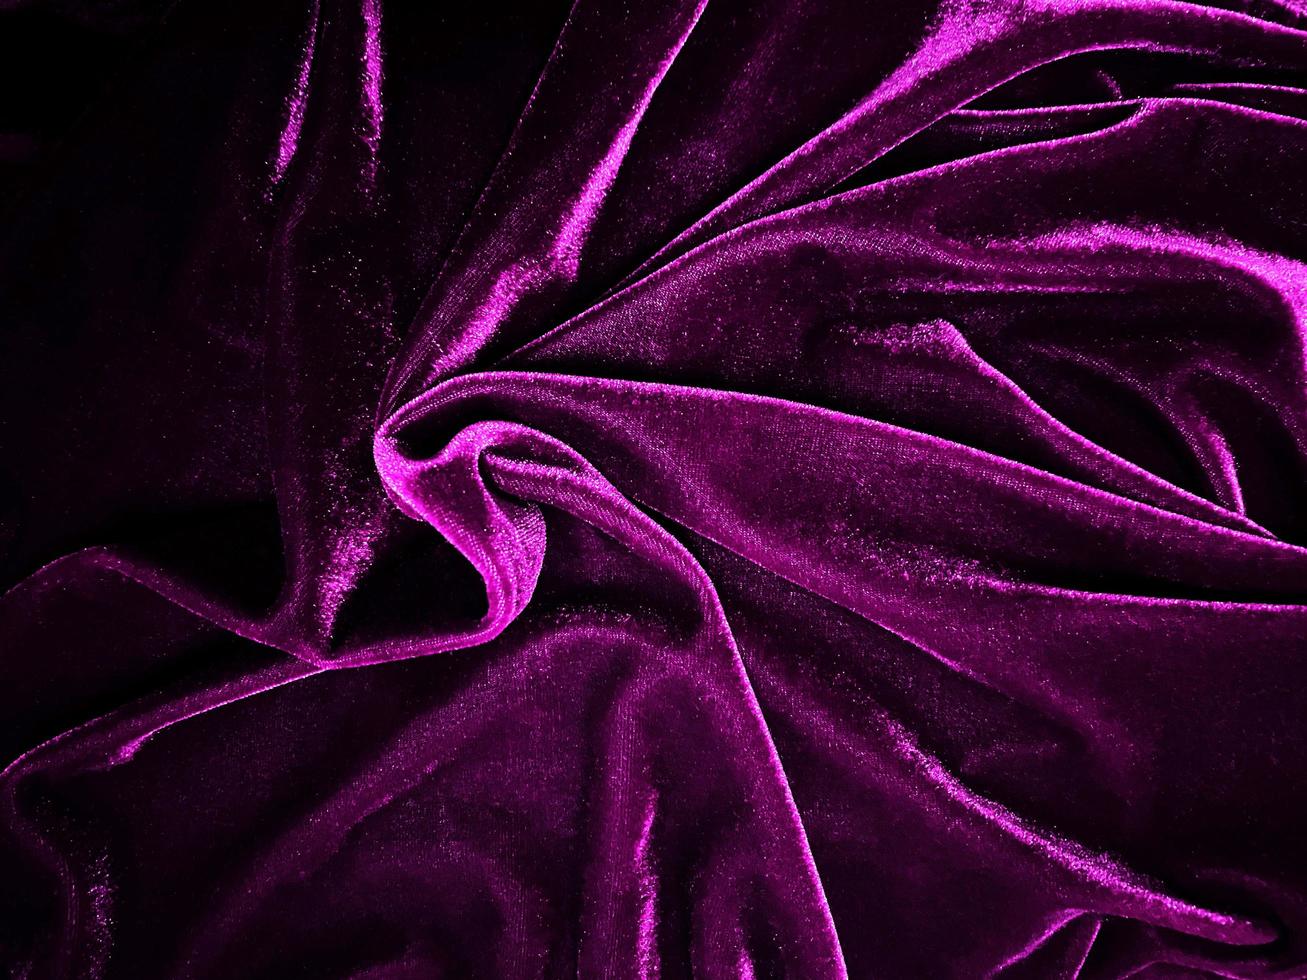 texture de tissu de velours violet utilisée comme arrière-plan. fond de tissu violet vide de matière textile douce et lisse. il y a de l'espace pour le texte. photo